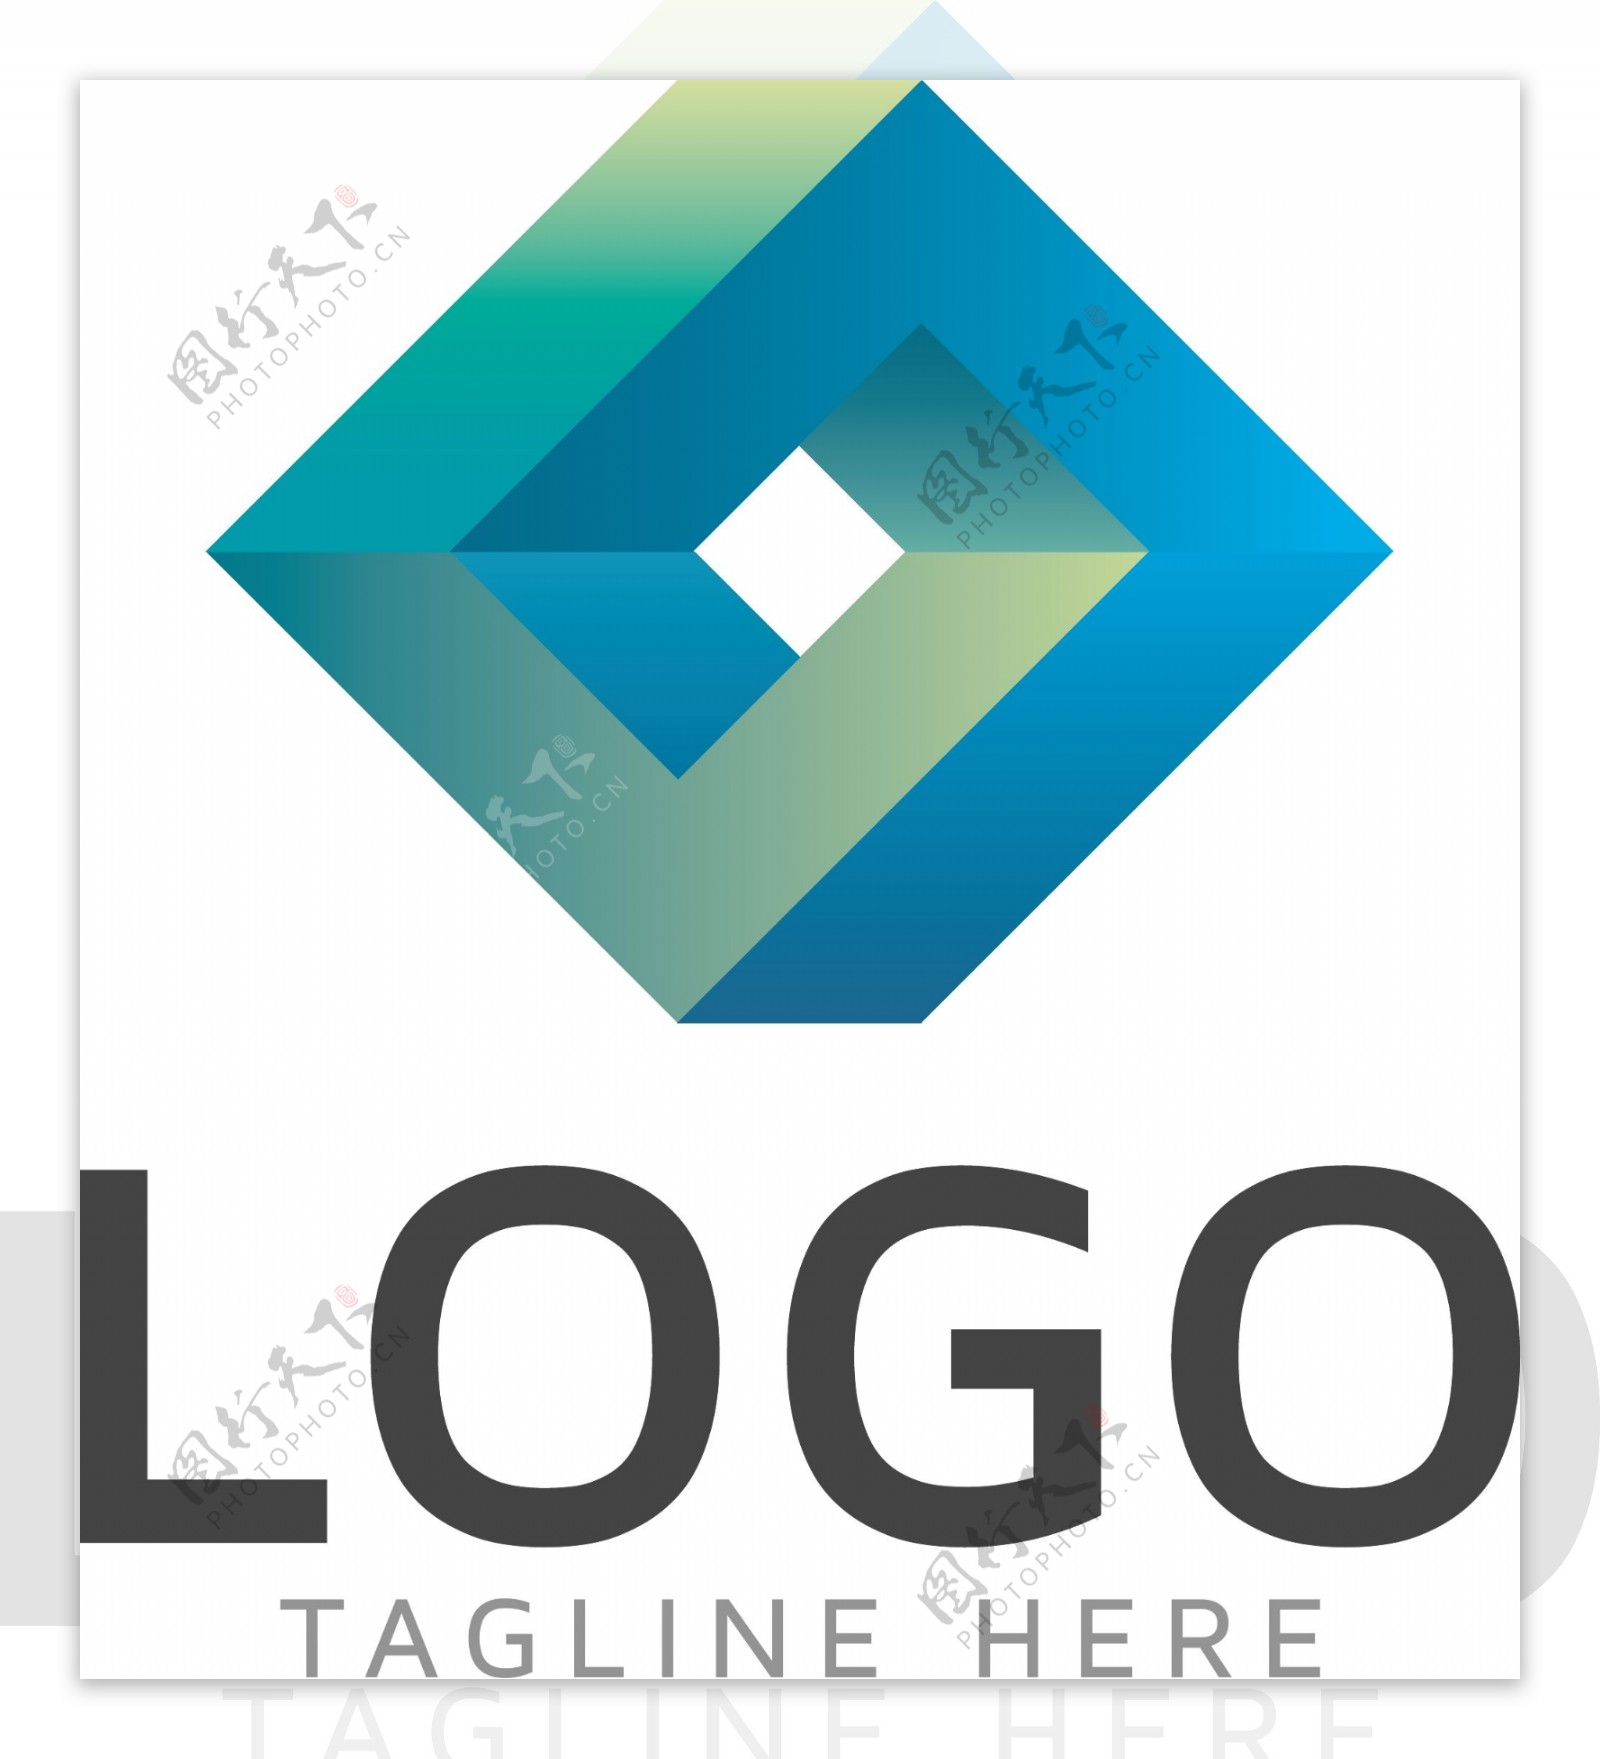 互联网形状类用途标识logo多用途